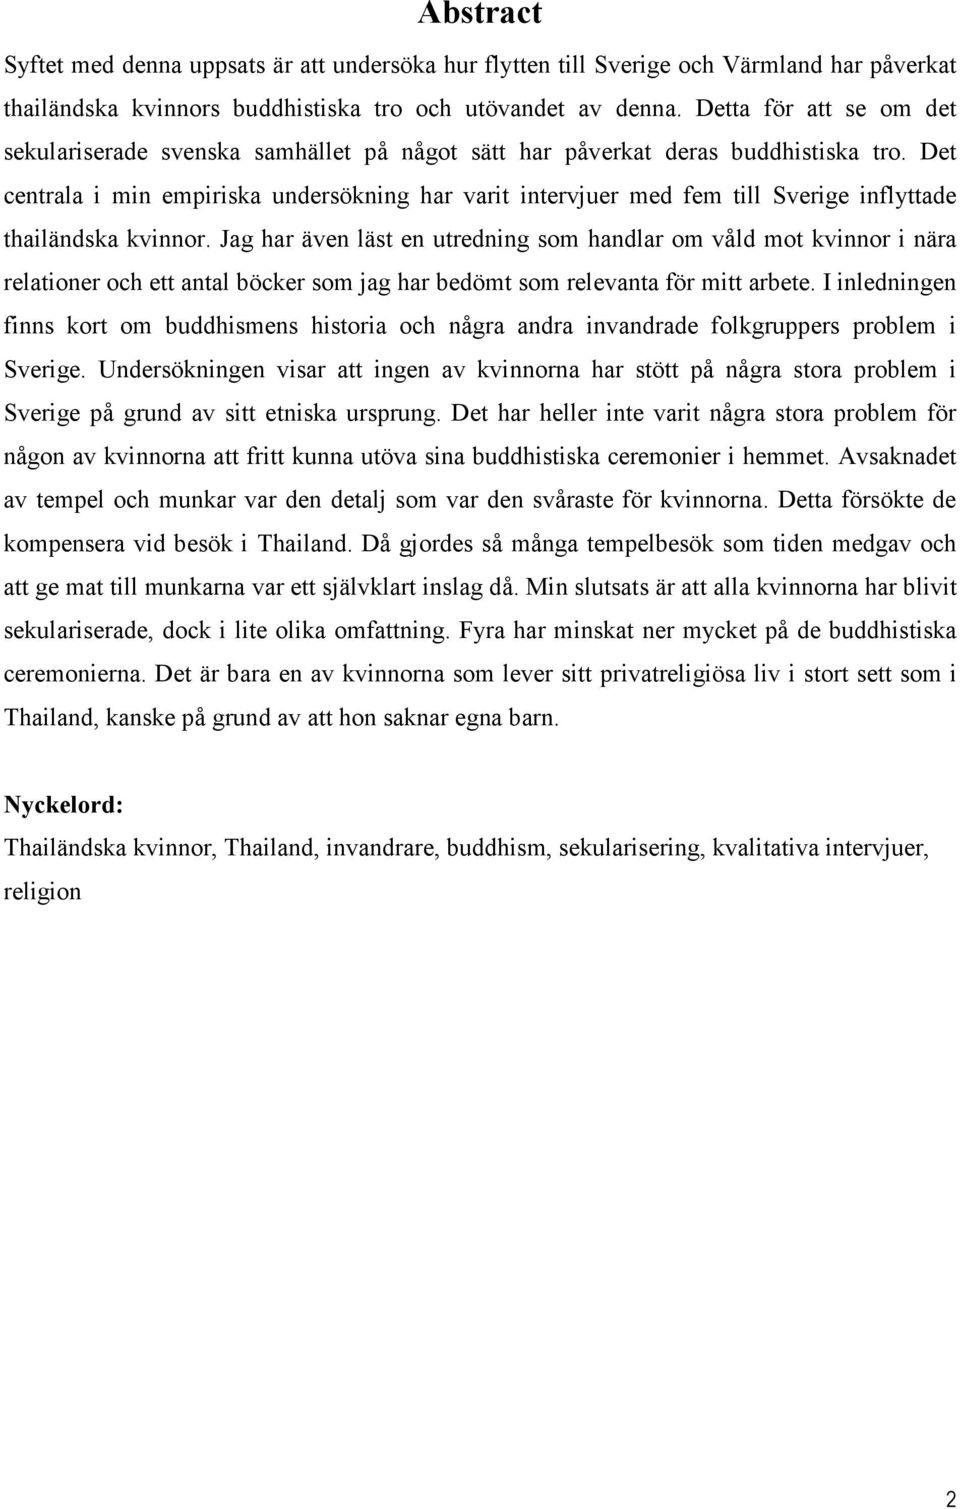 Det centrala i min empiriska undersökning har varit intervjuer med fem till Sverige inflyttade thailändska kvinnor.